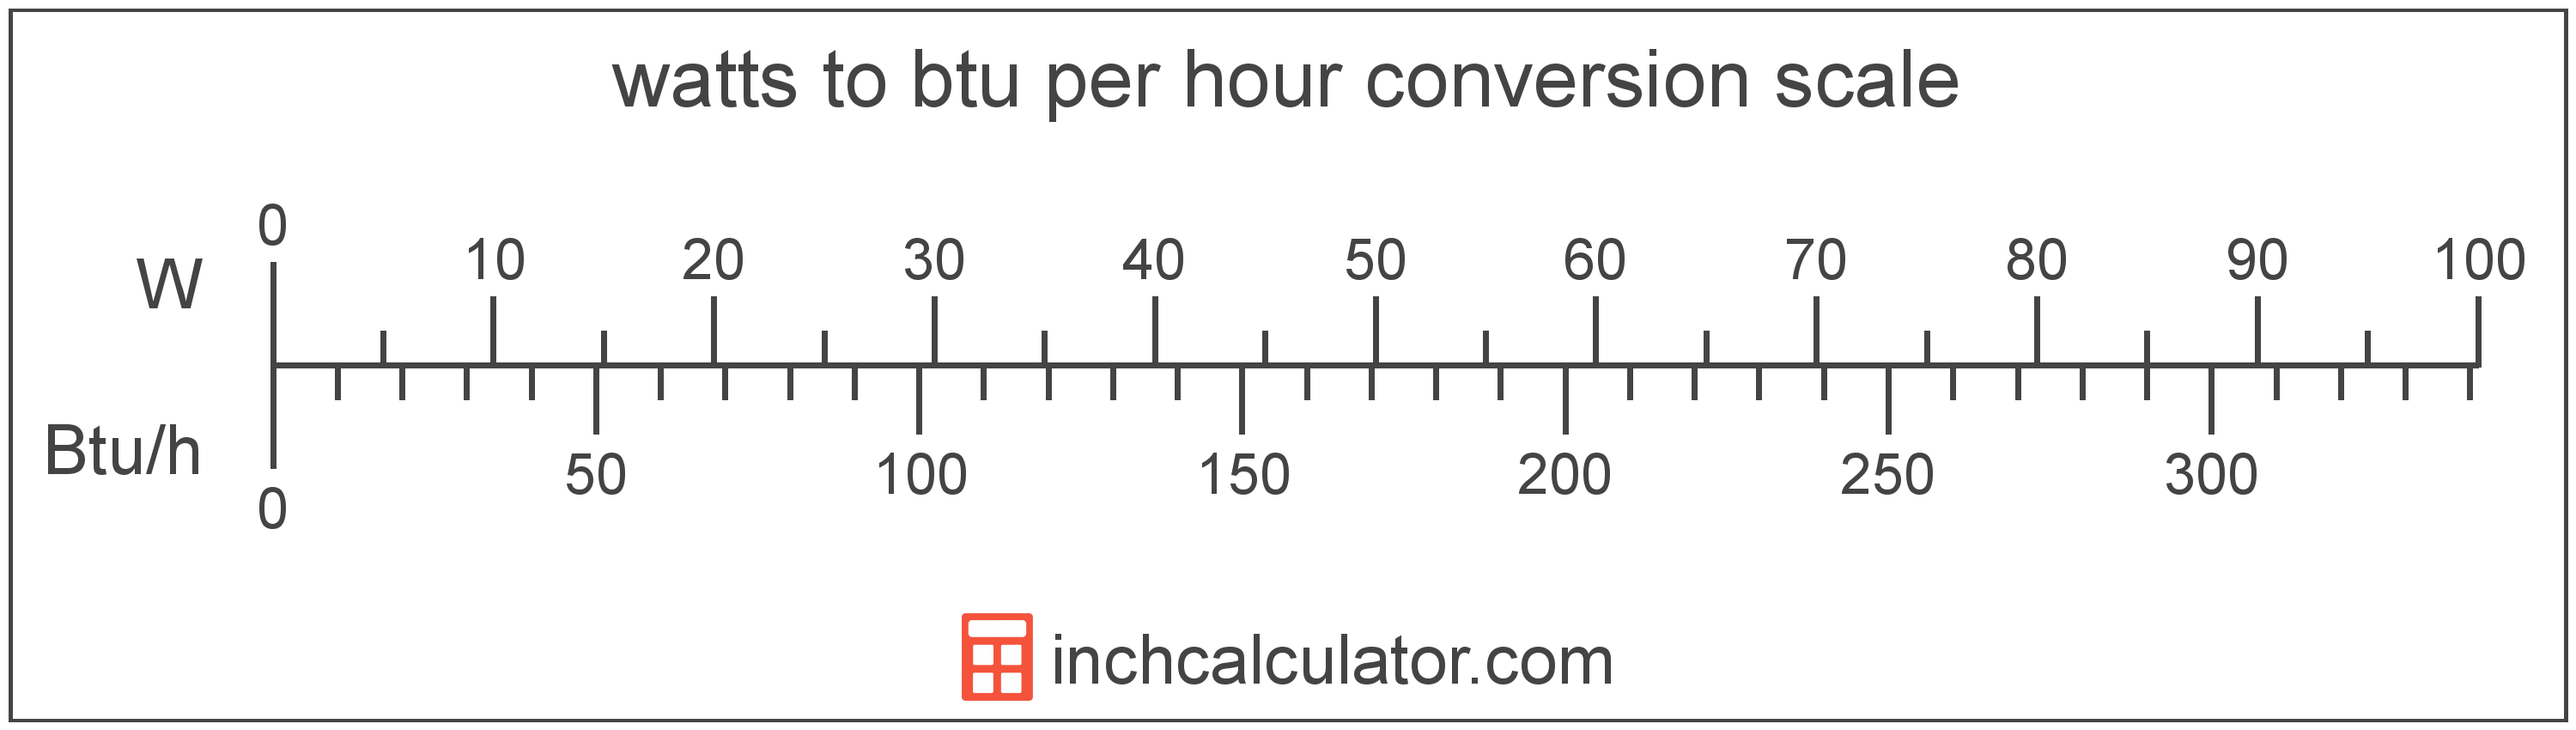 Watts To Btu Per Hour Conversion W To Btu H Inch Calculator